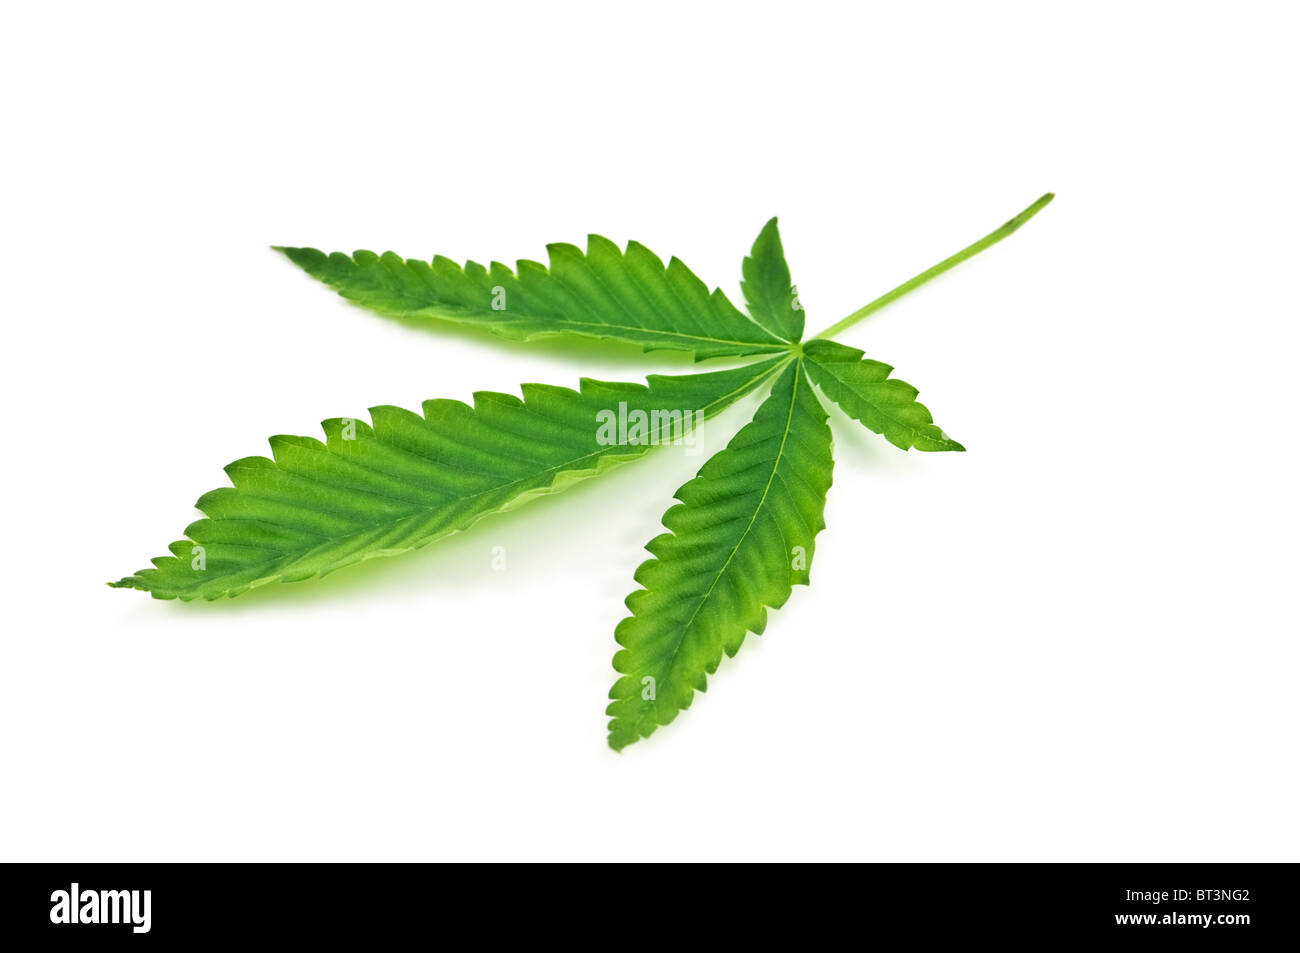 marijuana leaf isolated on white background Stock Photo